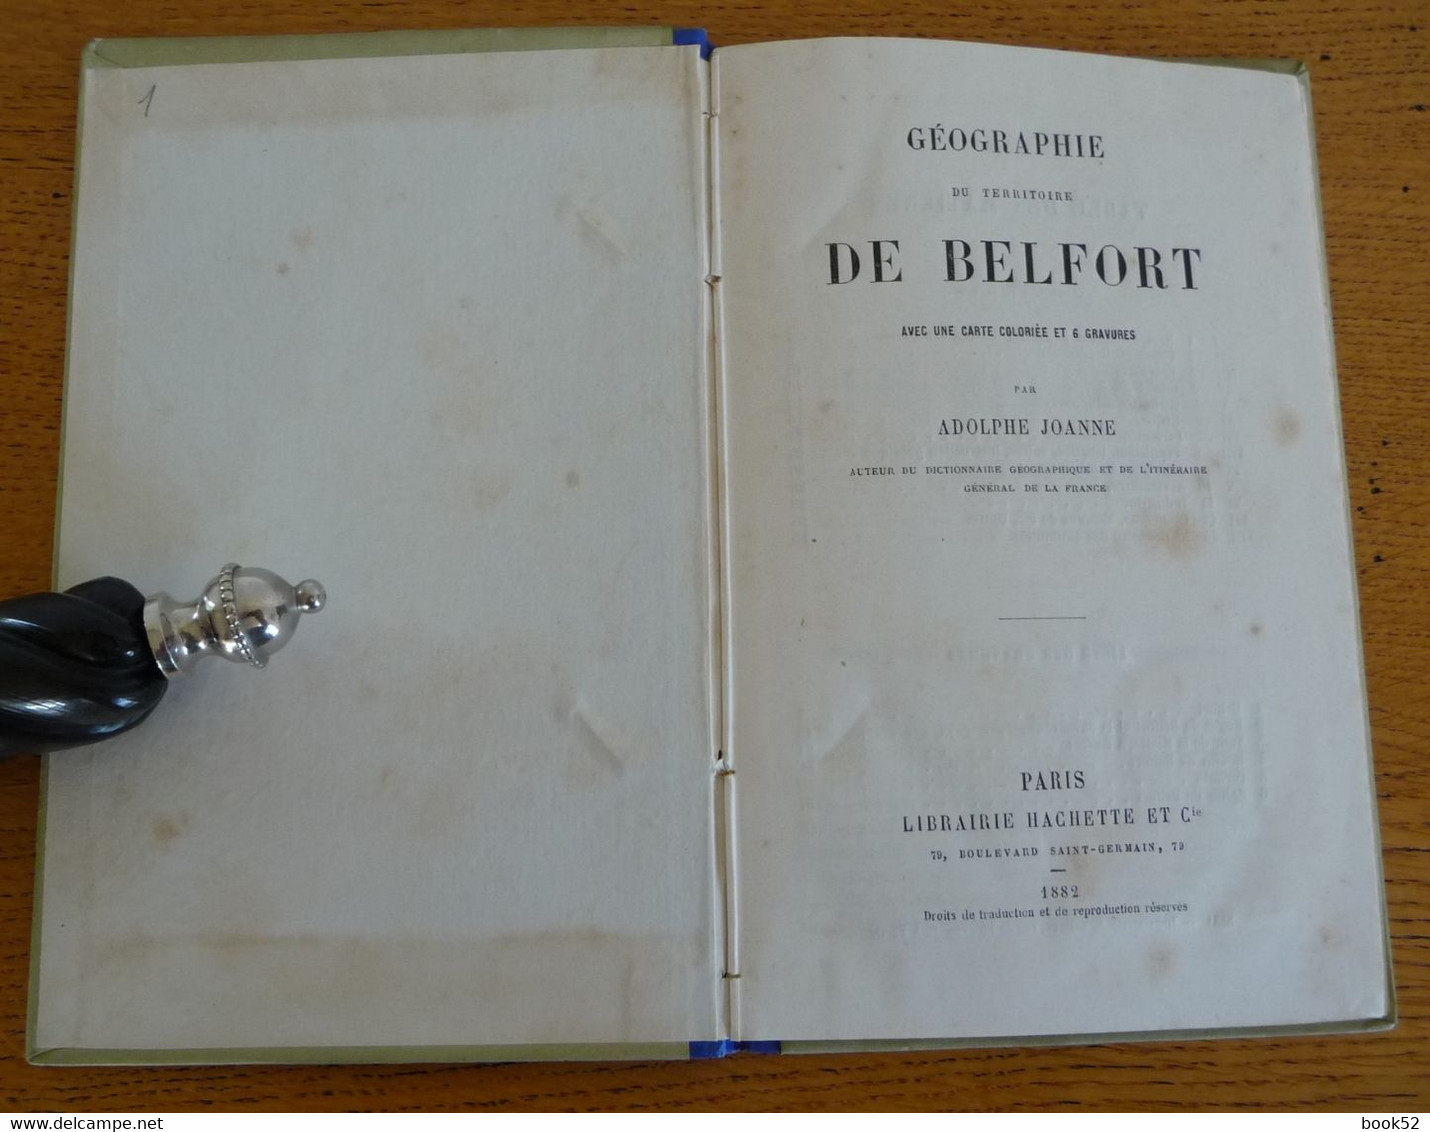 Géographie Du TERRITOIRE DE BELFORT Par Adolphe JOANNE (1882) 6 Gravures Et 1 Carte Coloriée - Franche-Comté